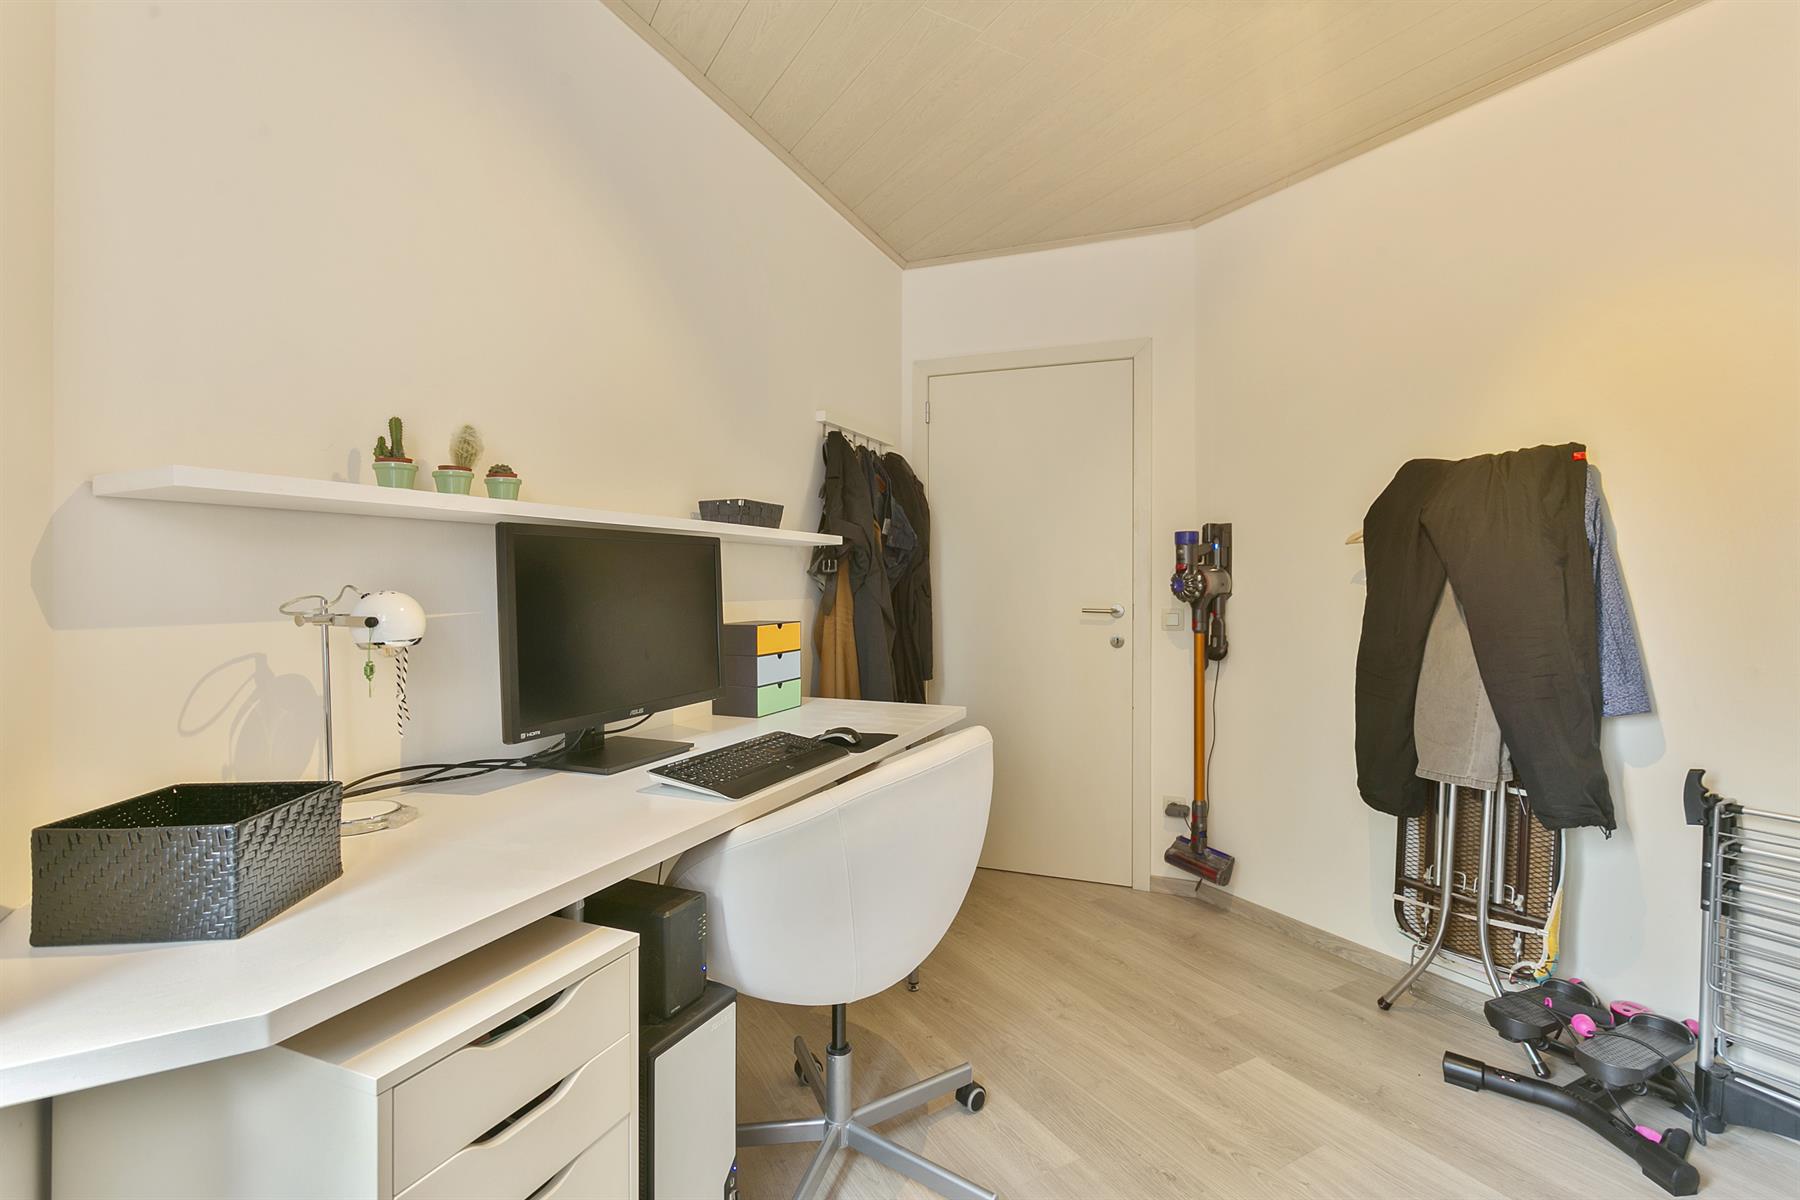 Afbeelding Instapklaar appartement inclusief garage te koop in Merelbeke - Casteels Vastgoed